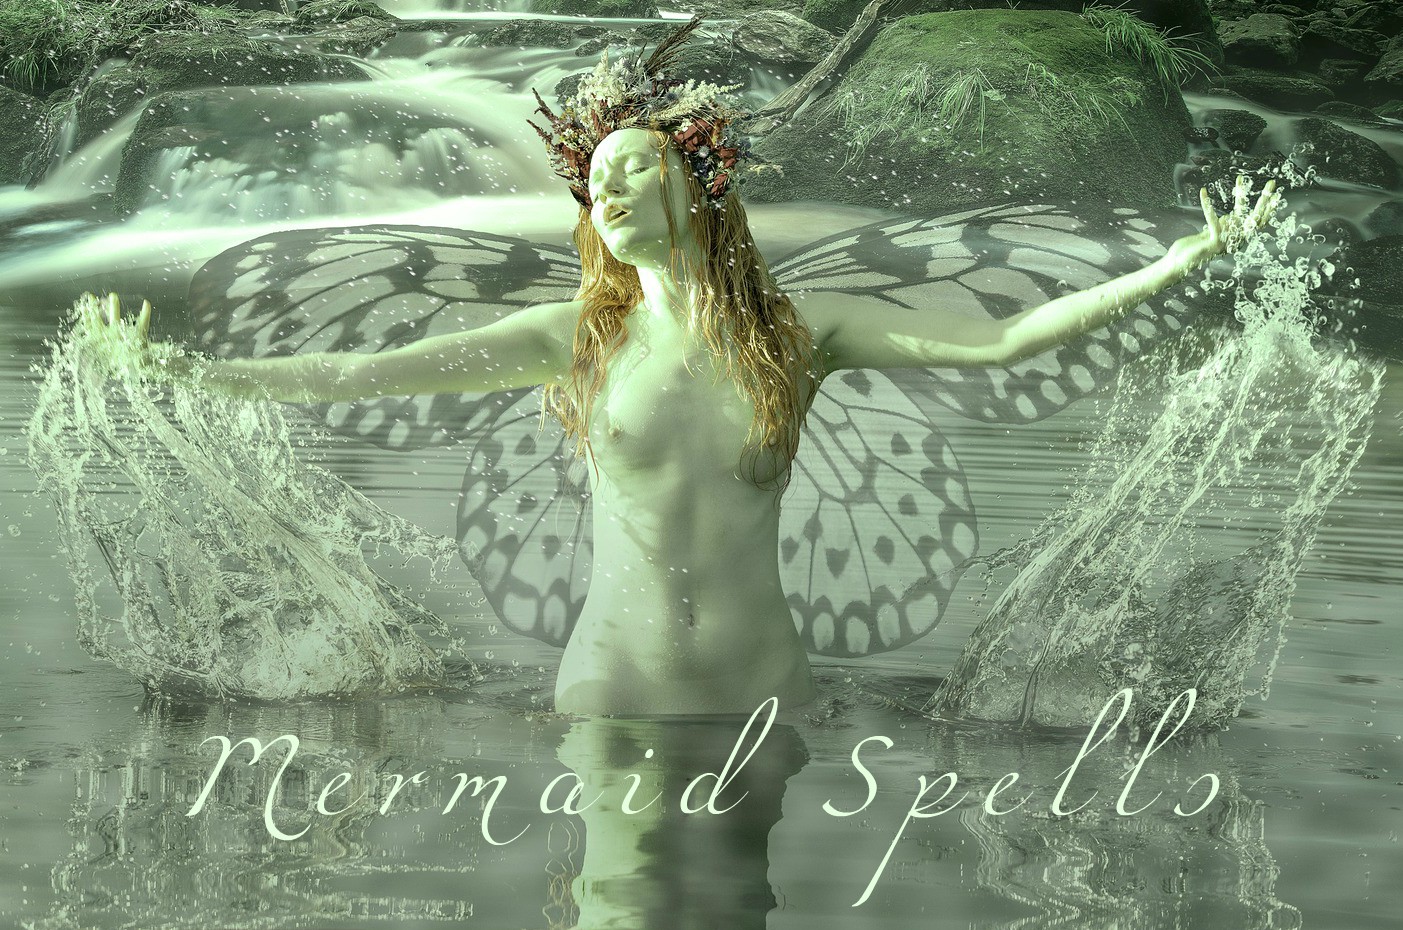 Mermaid Spells